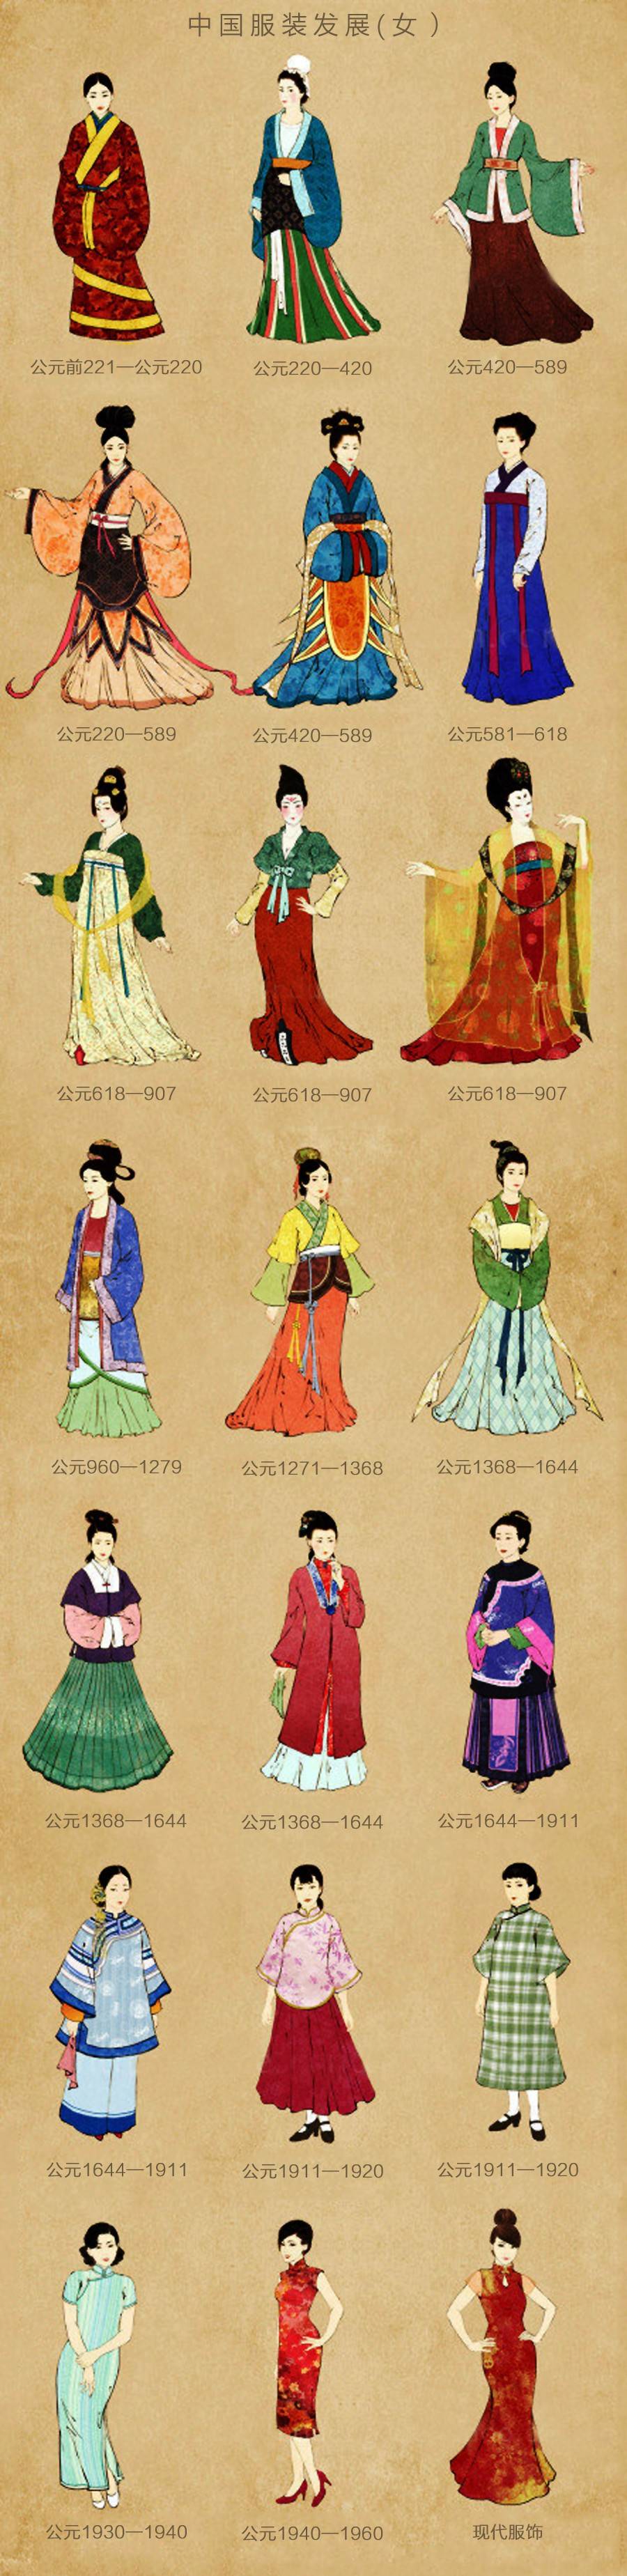 中国传统服装情怀之美——汉服